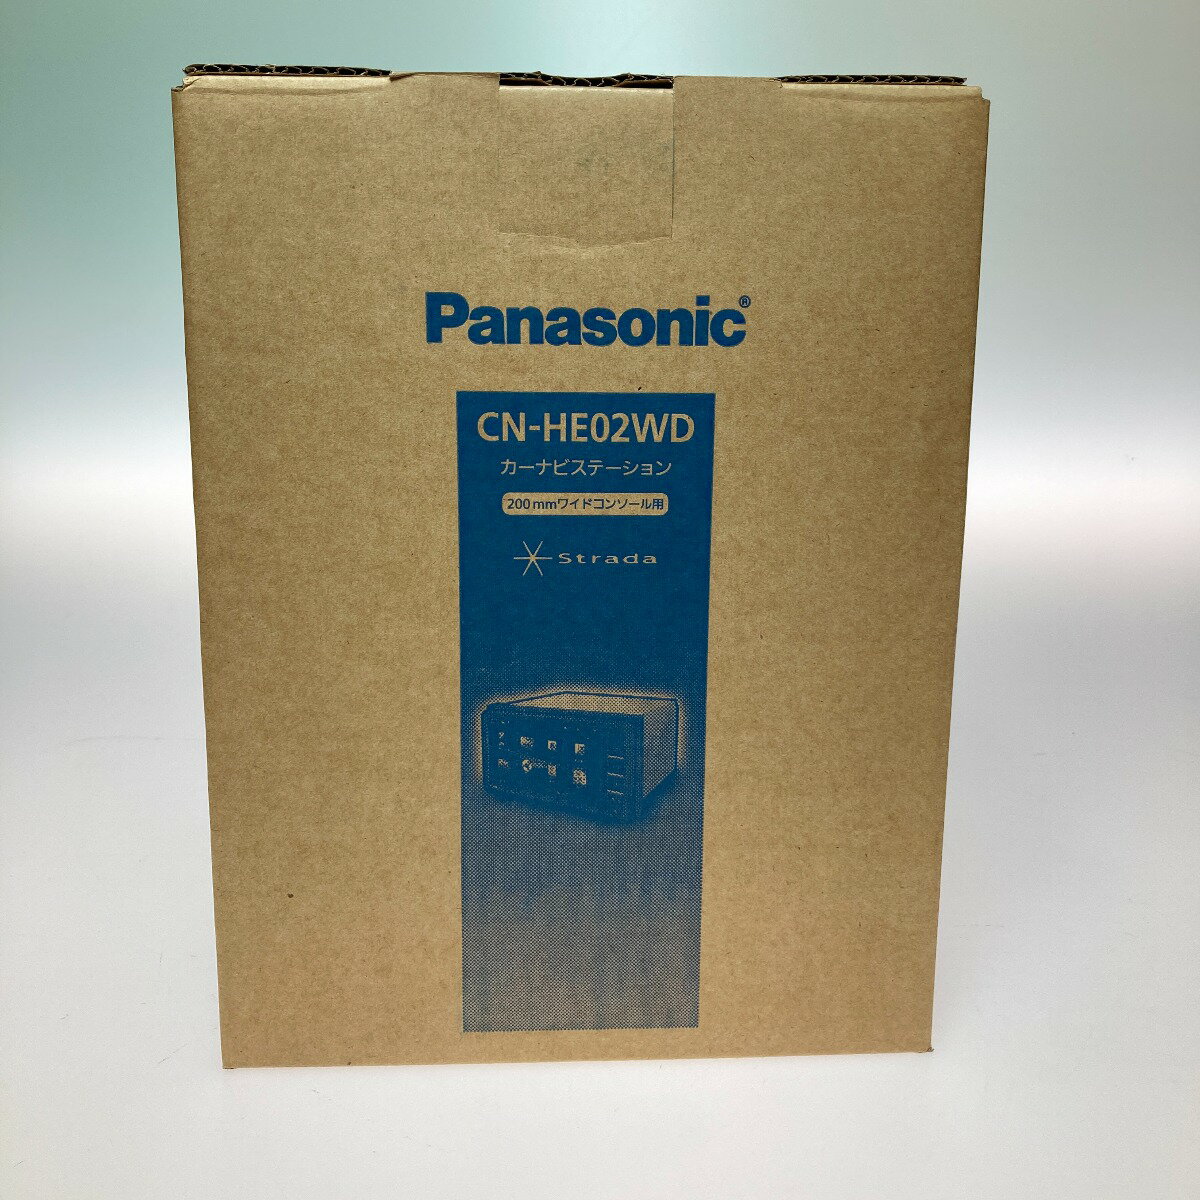 ◎◎【中古】Panasonic パナソニック カーナビ ストラーダ 200mmワイド CN-HE02WD Sランク